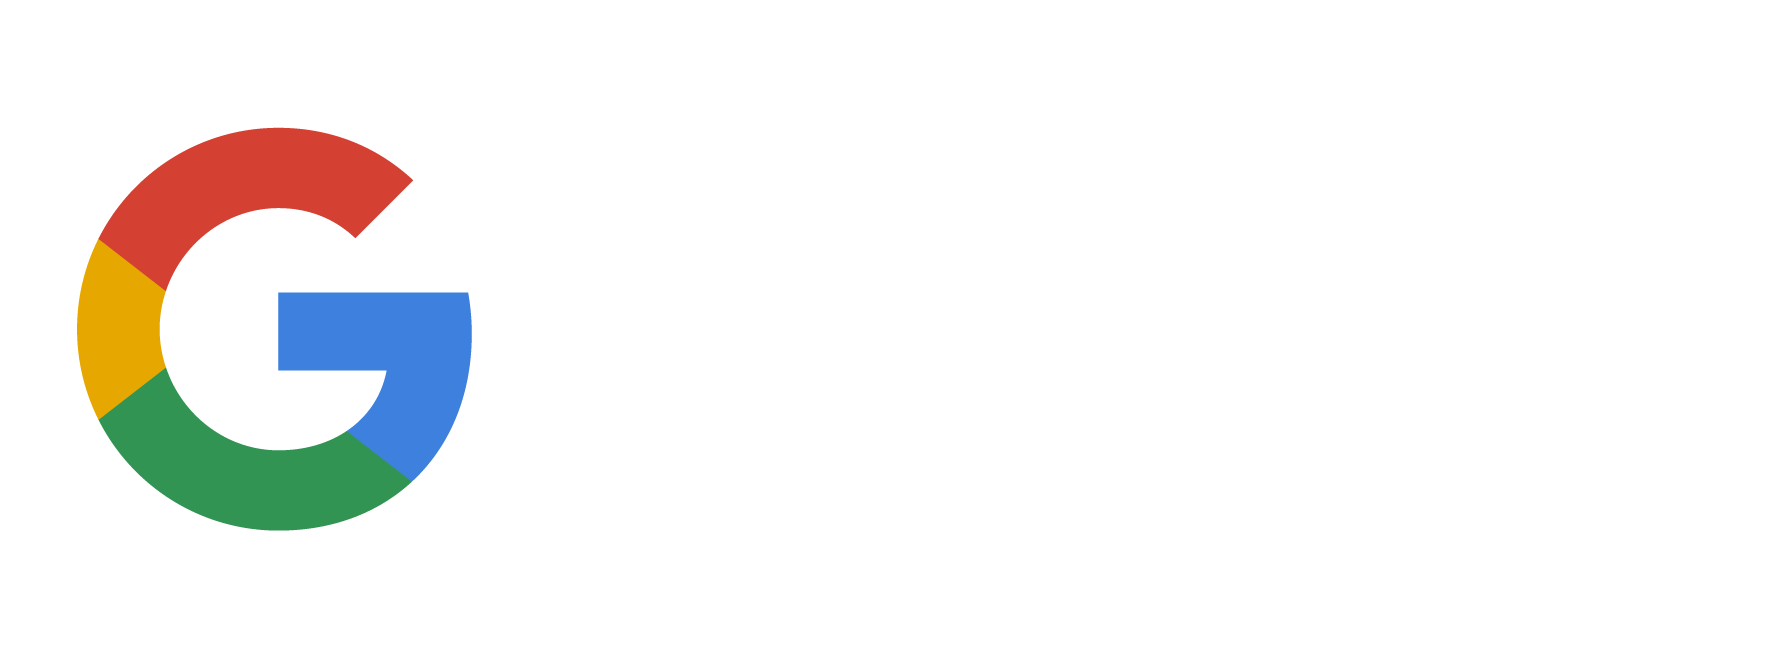 Suite G Logo - G Suite Logo 03. Baker Security & Networks